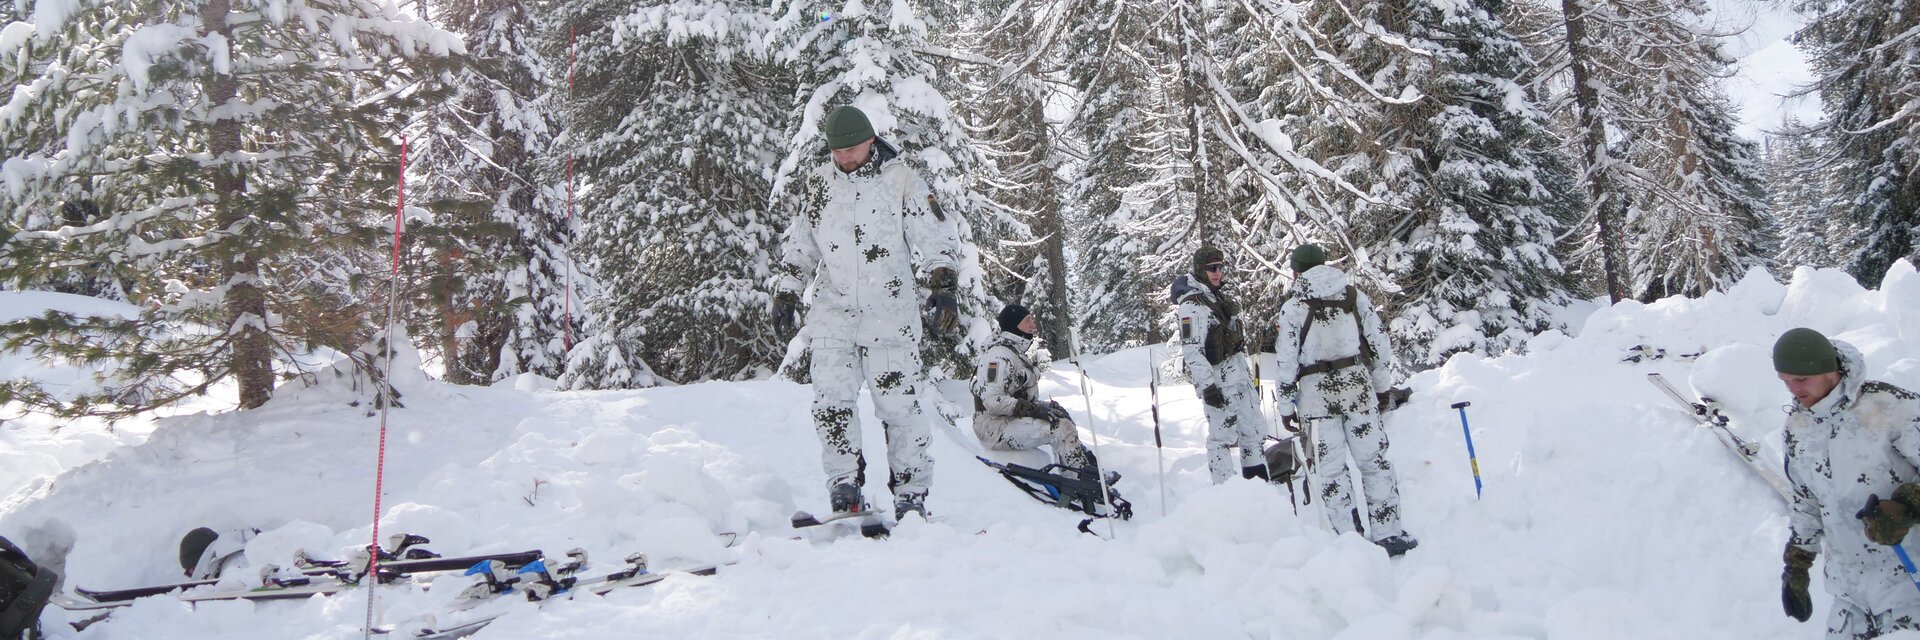 Soldaten der GebirgsjÃ¤gertruppe im Schneetarn-Anzug bereiten ihr Lager im Wald vor.